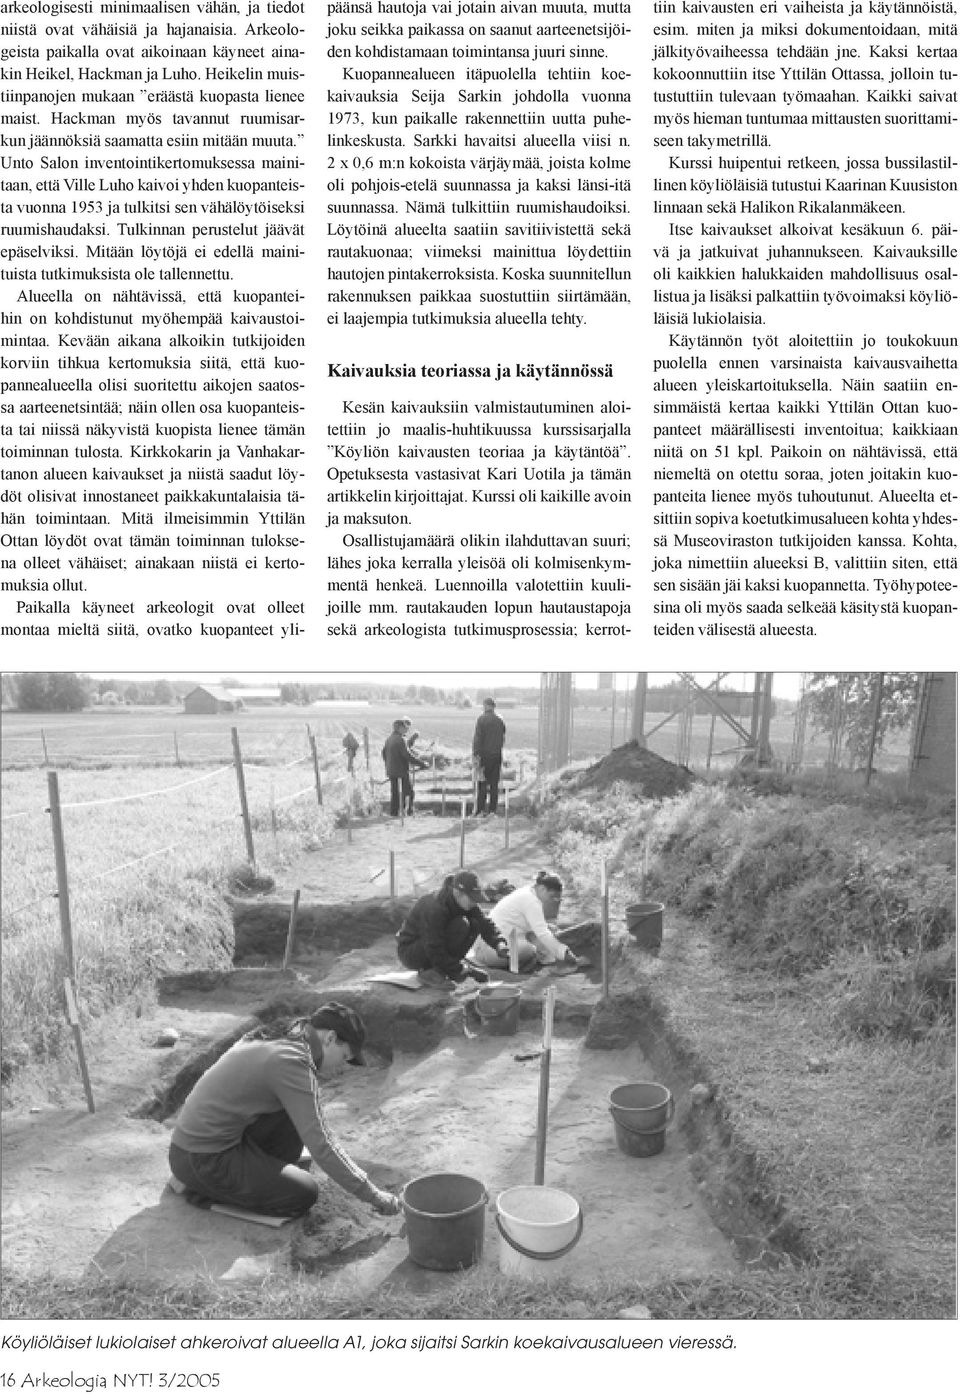 Unto Salon inventointikertomuksessa mainitaan, että Ville Luho kaivoi yhden kuopanteista vuonna 1953 ja tulkitsi sen vähälöytöiseksi ruumishaudaksi. Tulkinnan perustelut jäävät epäselviksi.